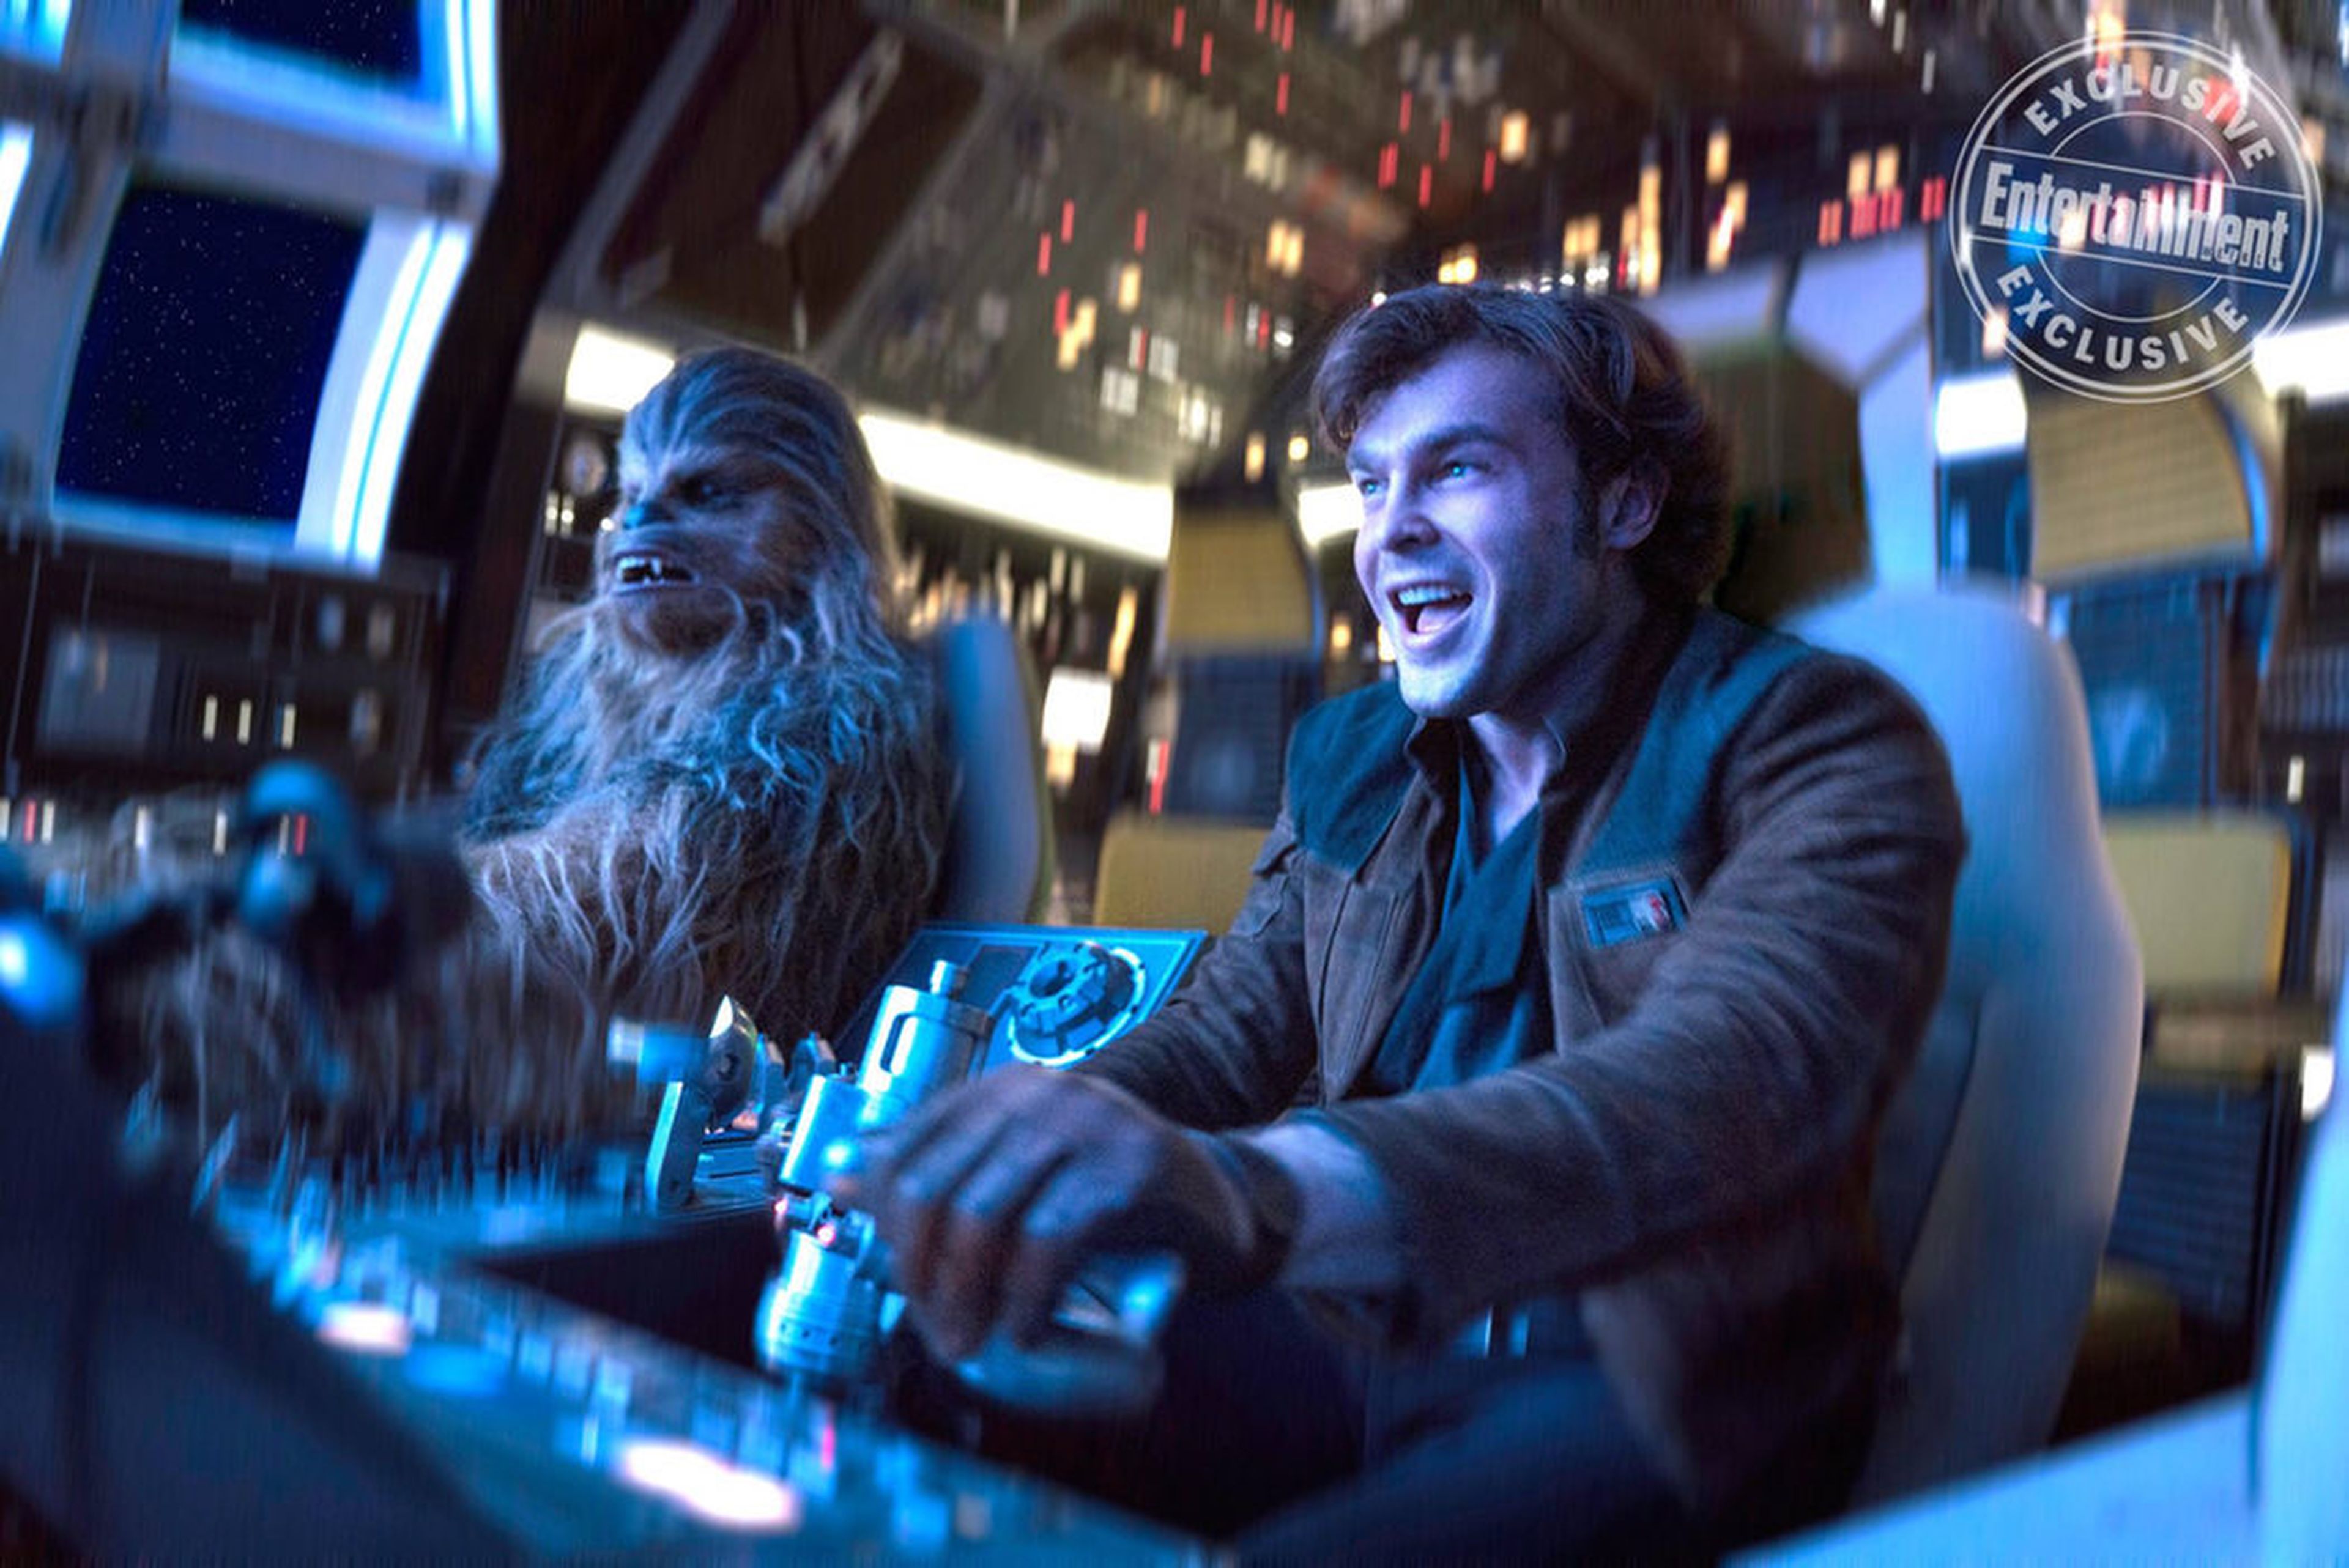 Han Solo: Una Historia de Star Wars. Blu-Ray